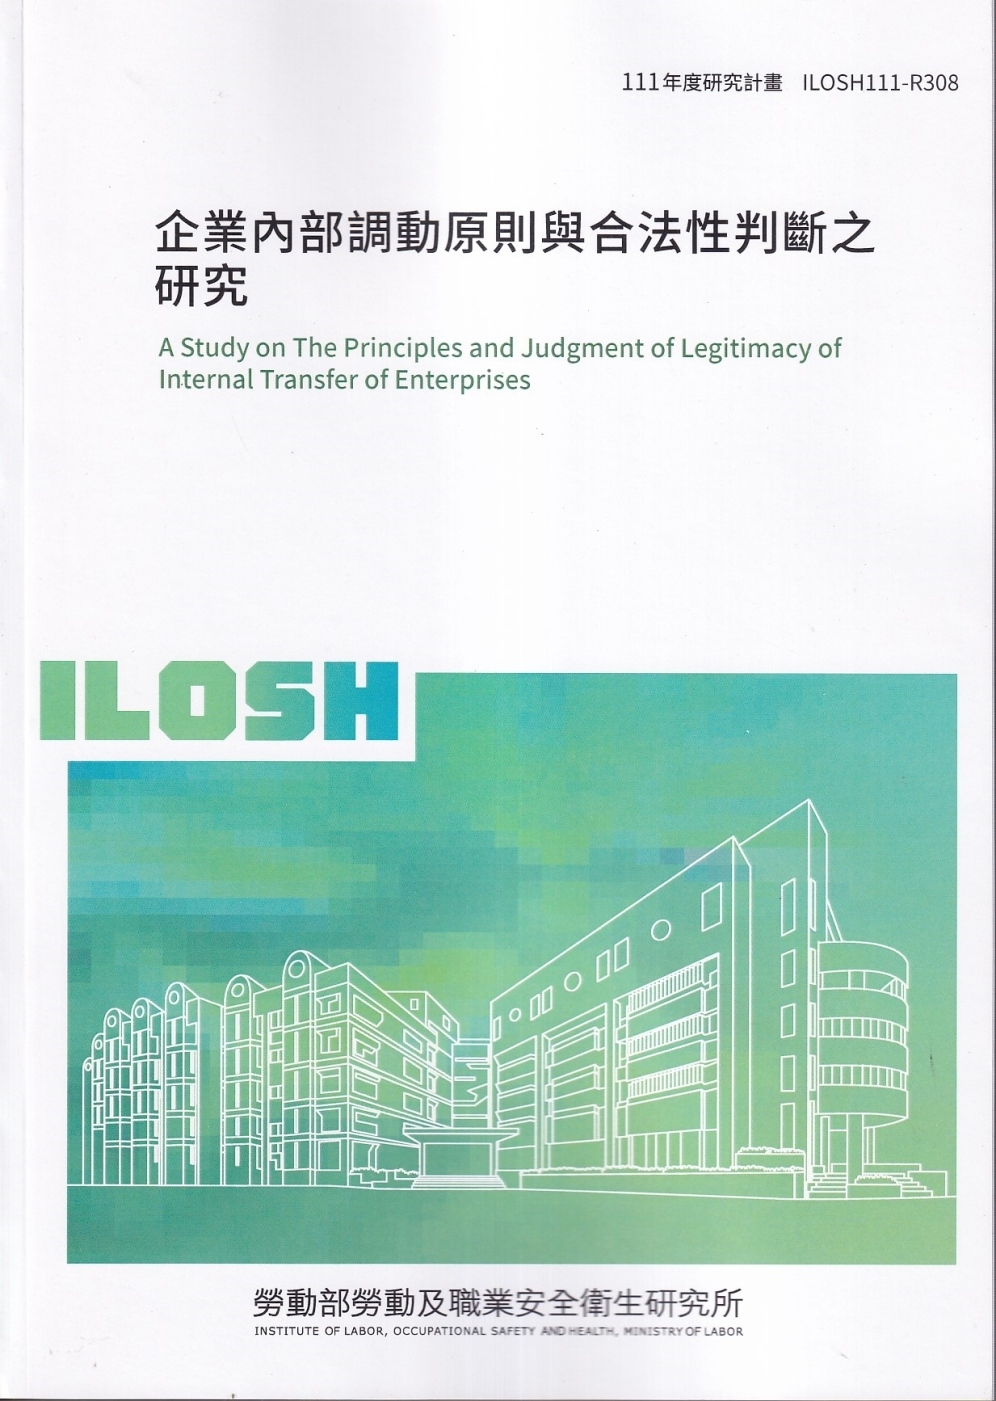 企業內部調動原則與合法性判斷之研究ILOSH111-R308